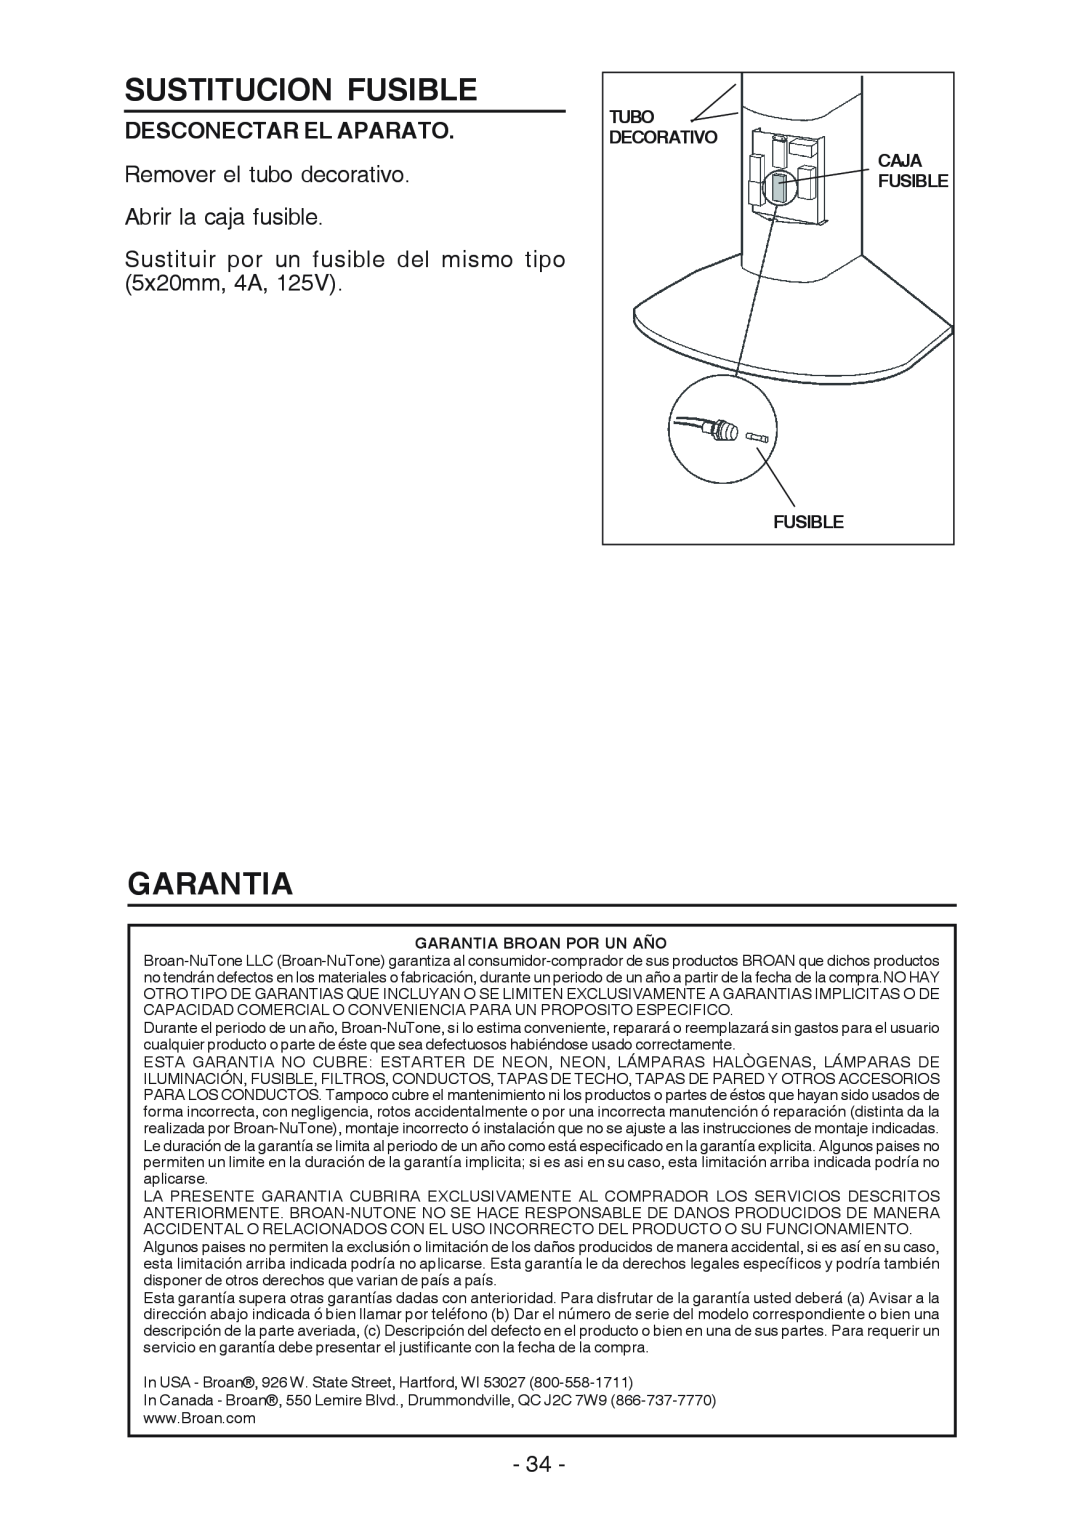 Broan RM519004 manual Sustitucion Fusible, Garantia, Desconectar El Aparato 